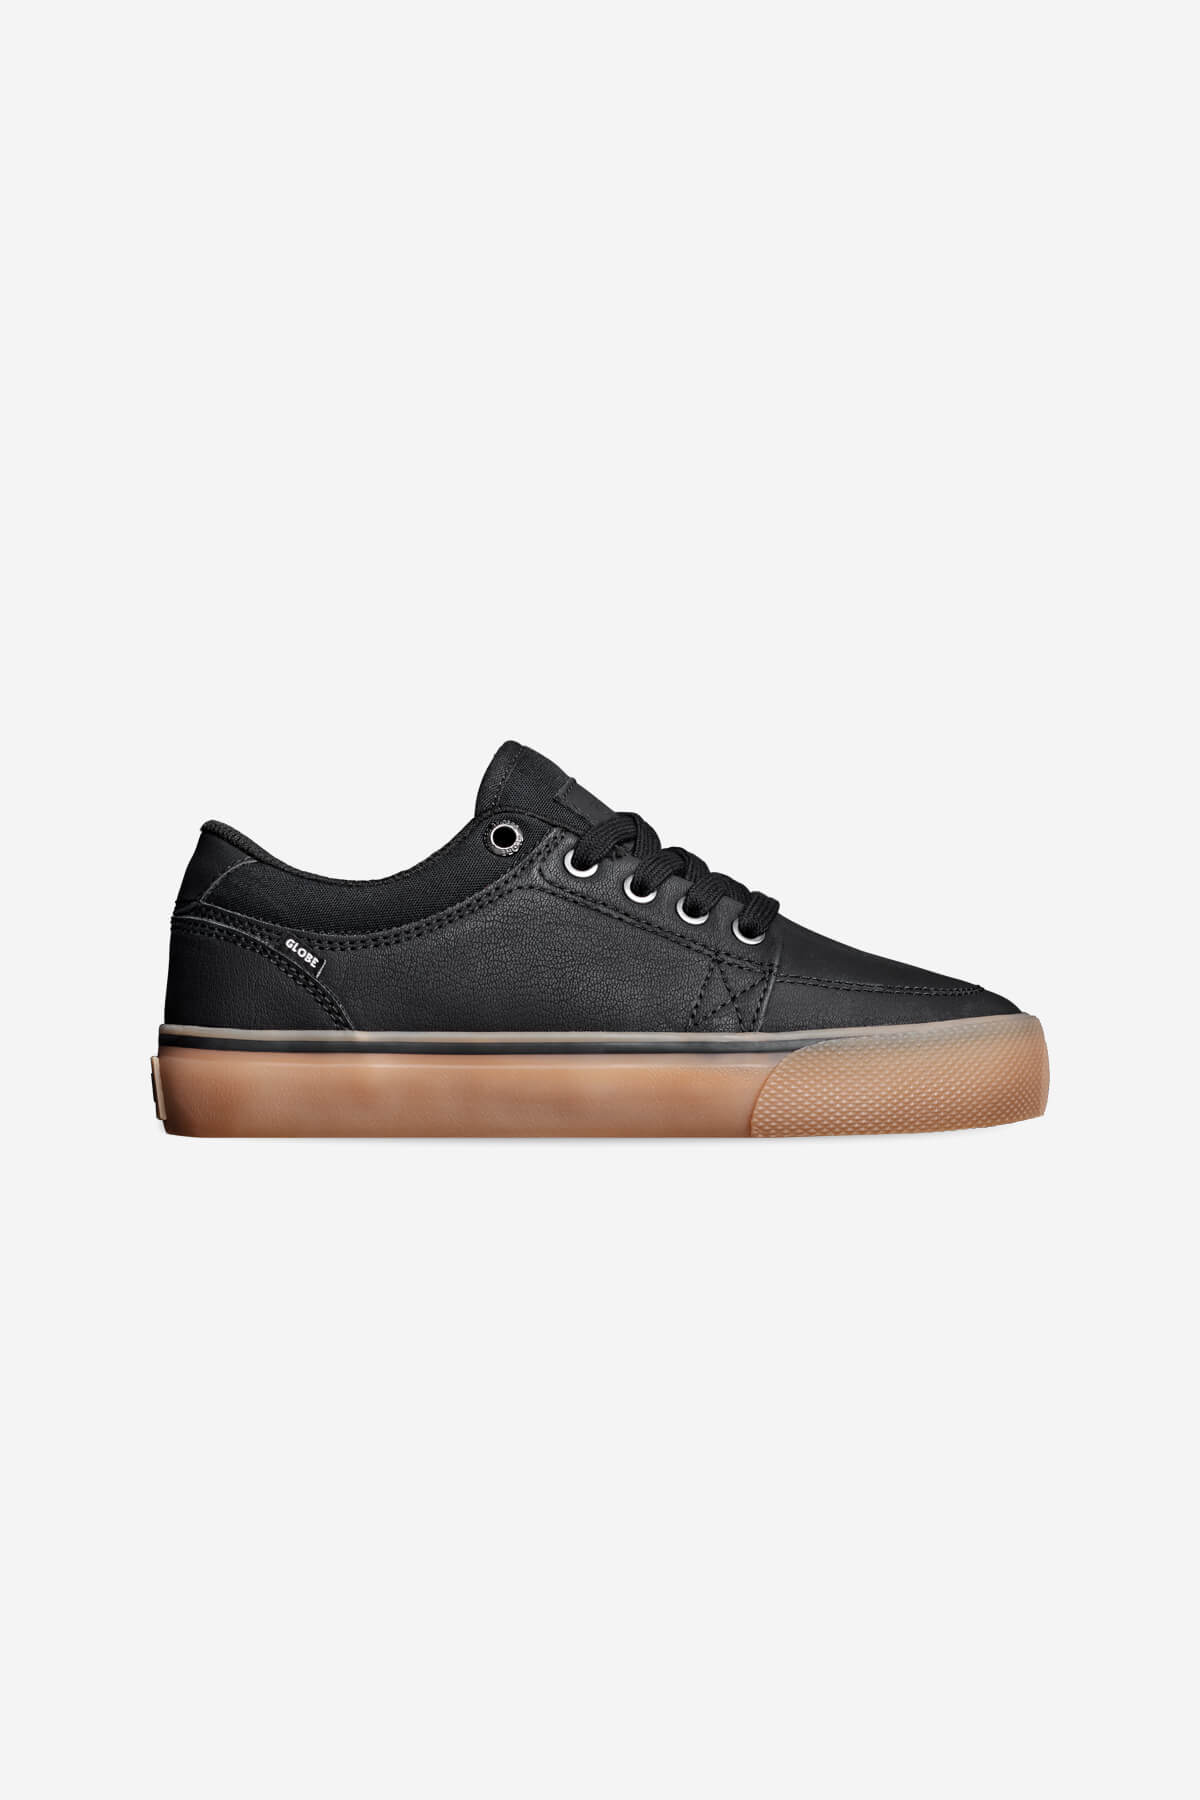 gs-kids black mock gum skate shoes